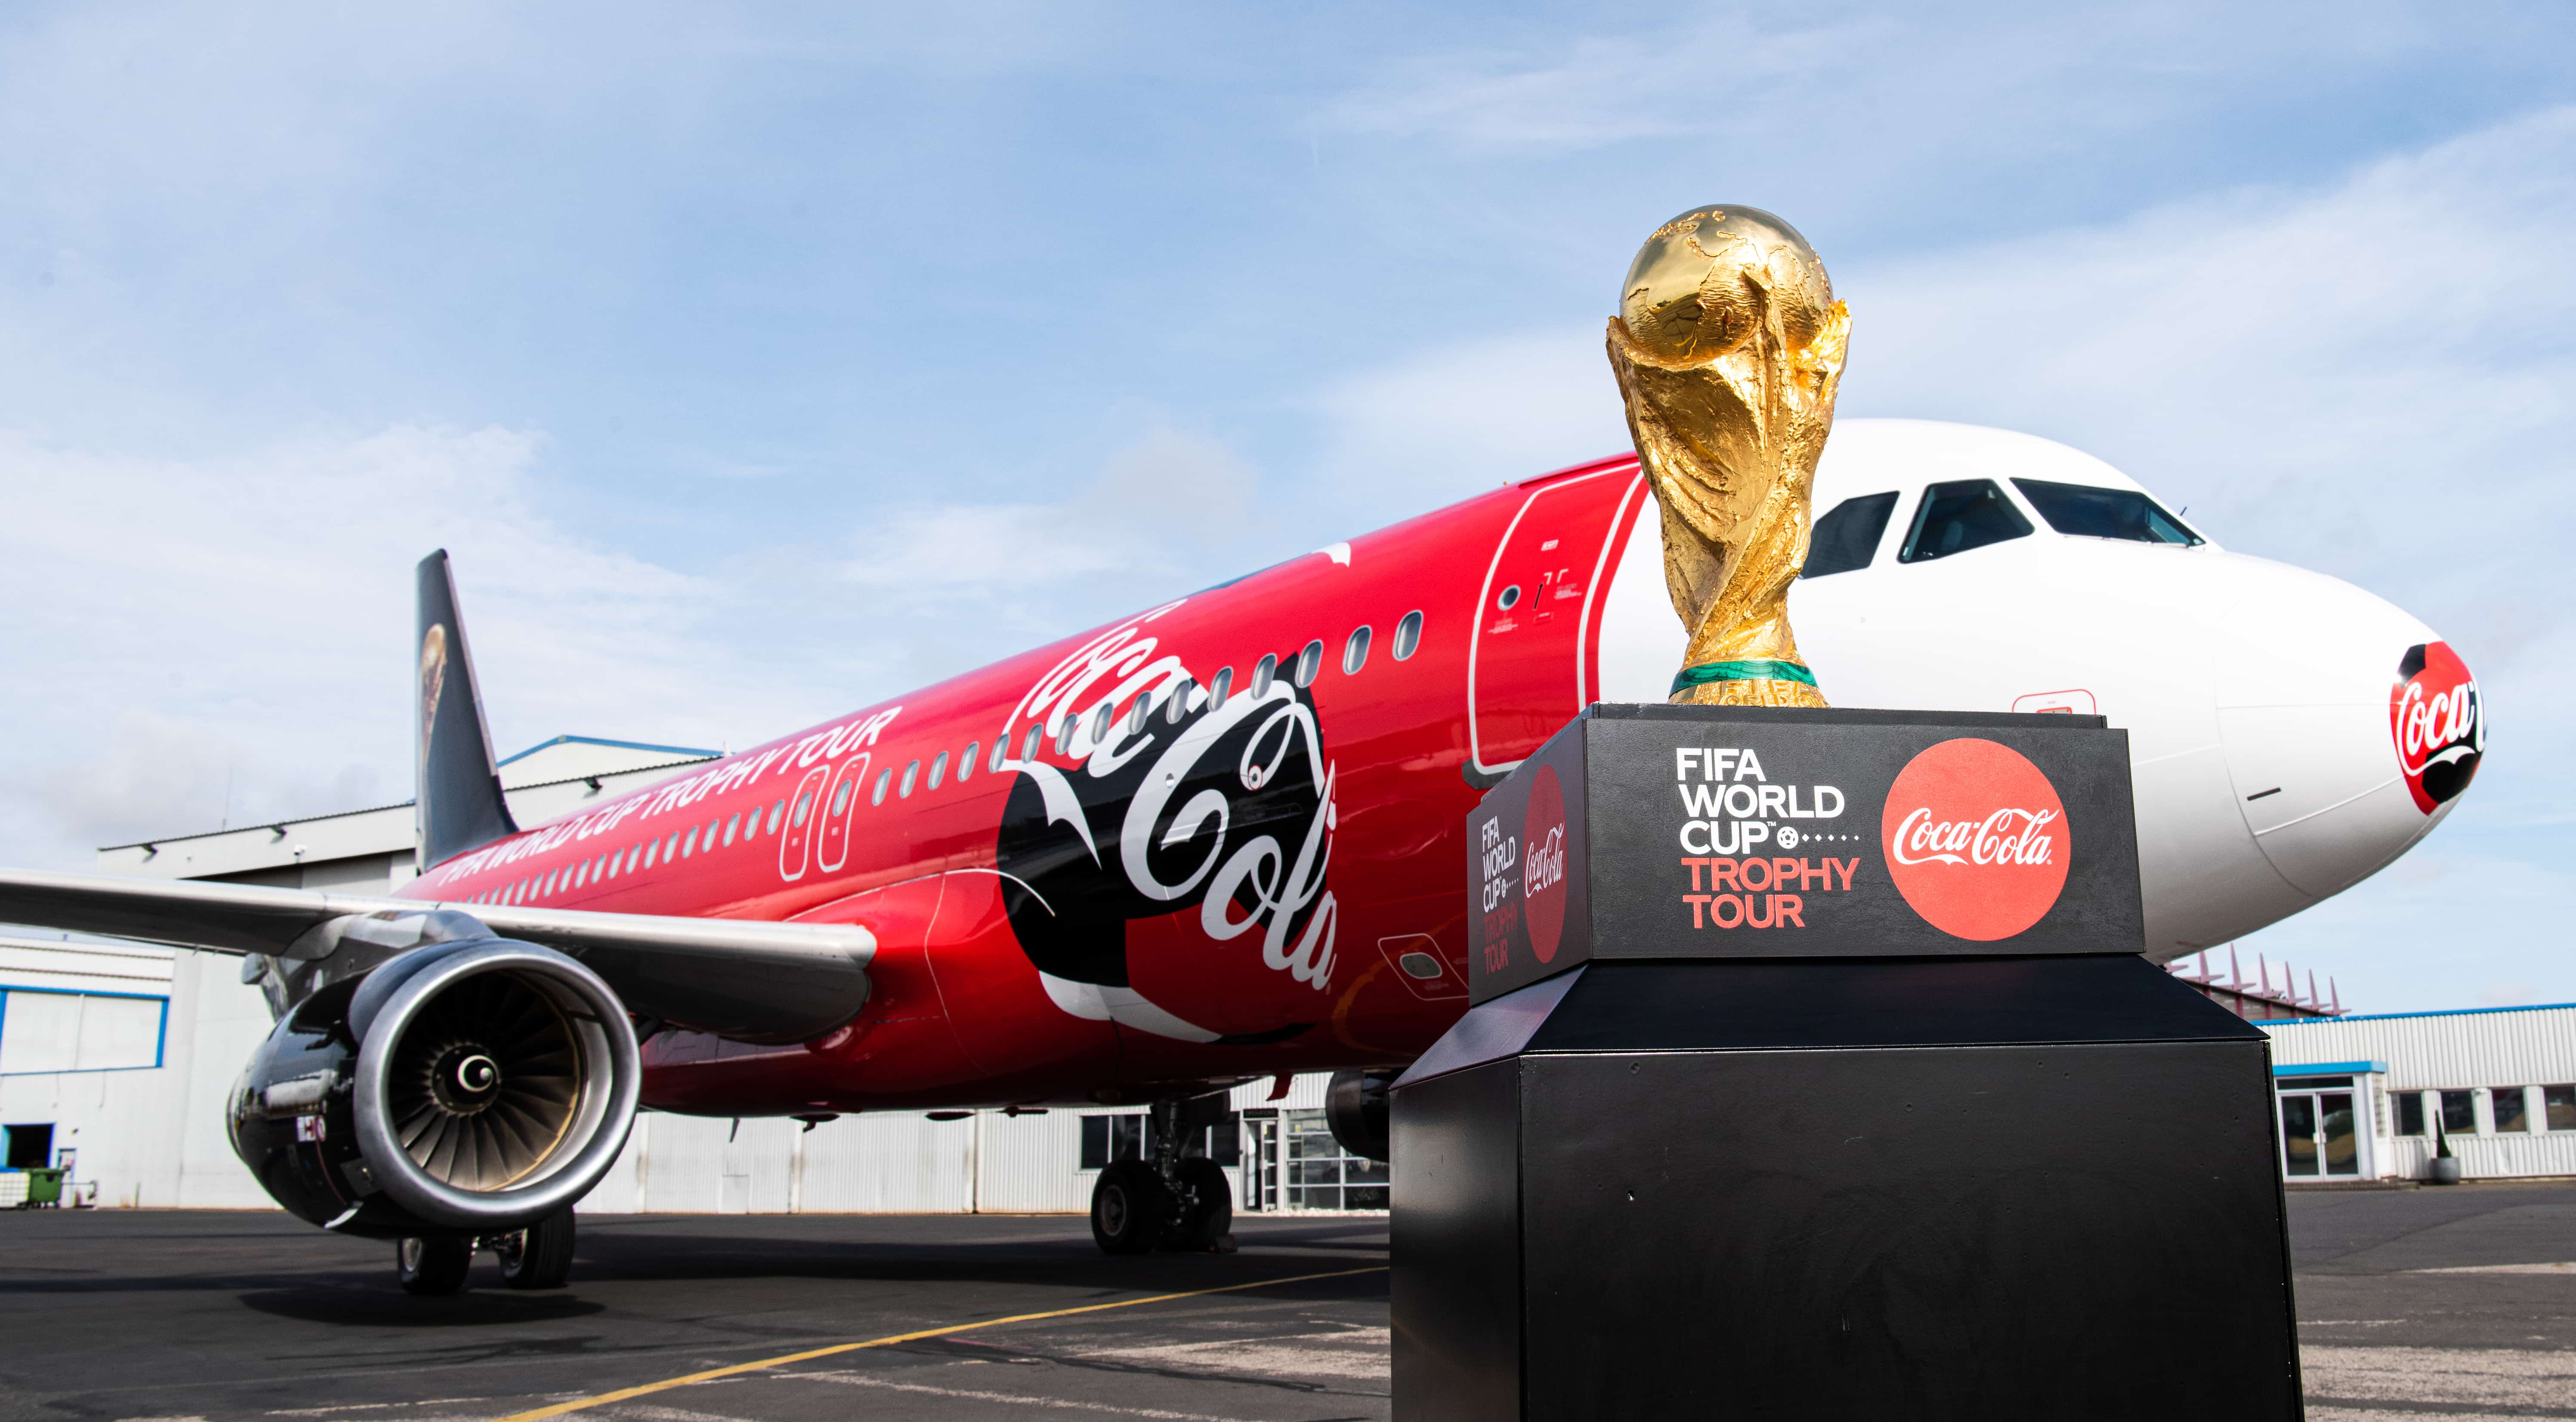 Fodbold-VM-trofæ står på et lille podie med Coca-Cola-branding og med et fly dekoreret i Coca-Cola-farver i baggrunden